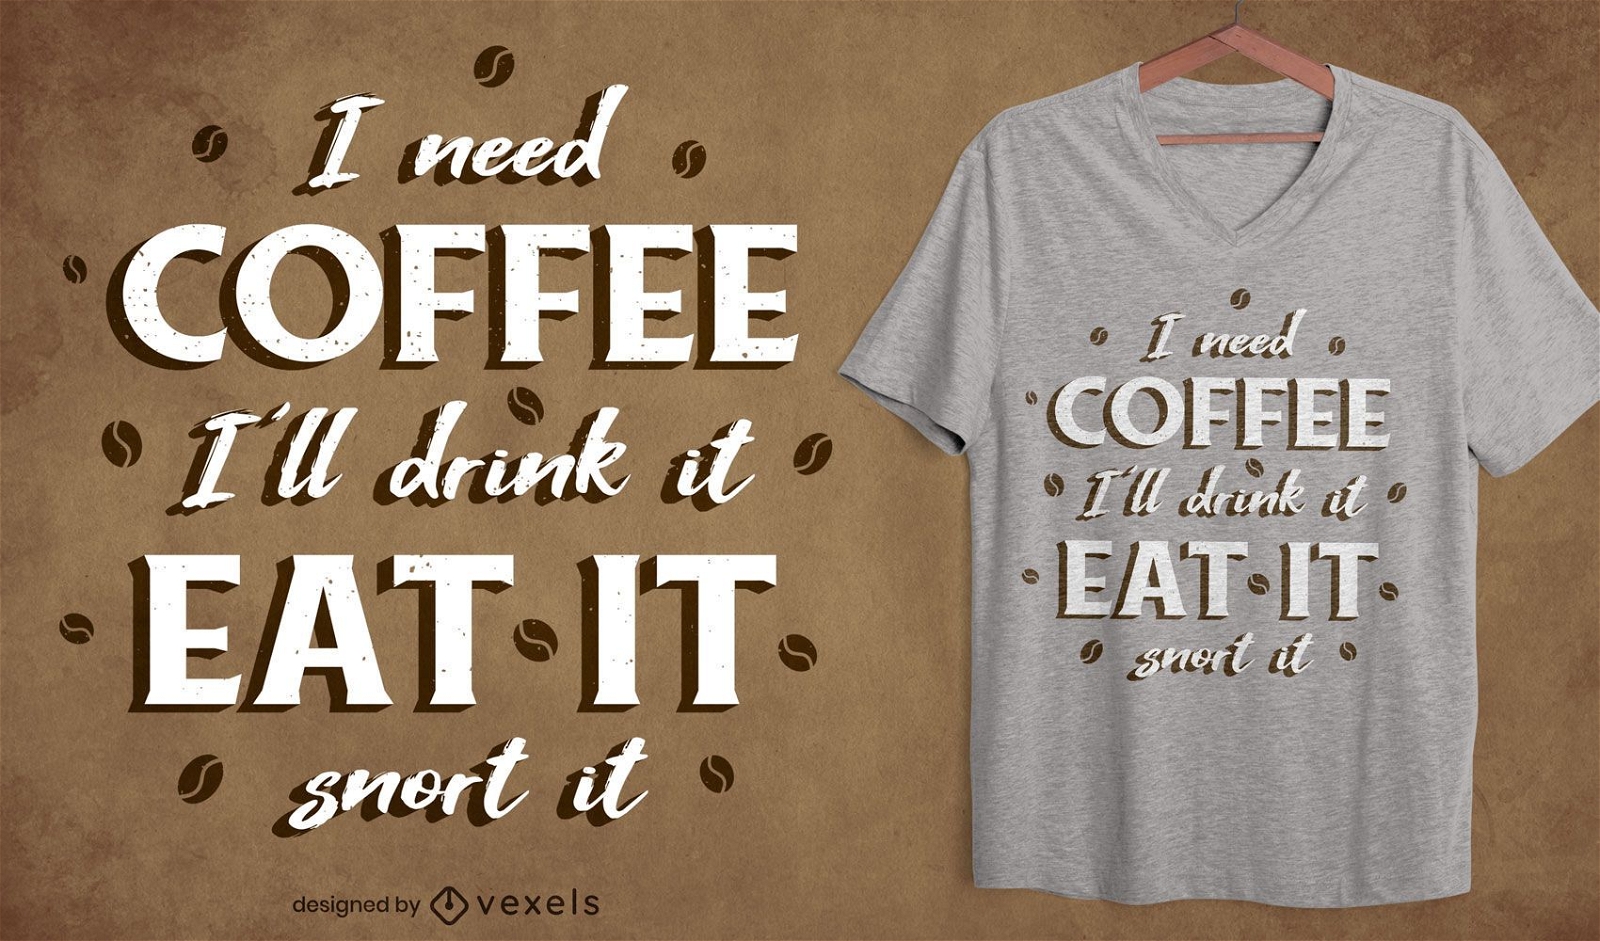 Dise?o de camiseta de cita de fan?tico del caf?.